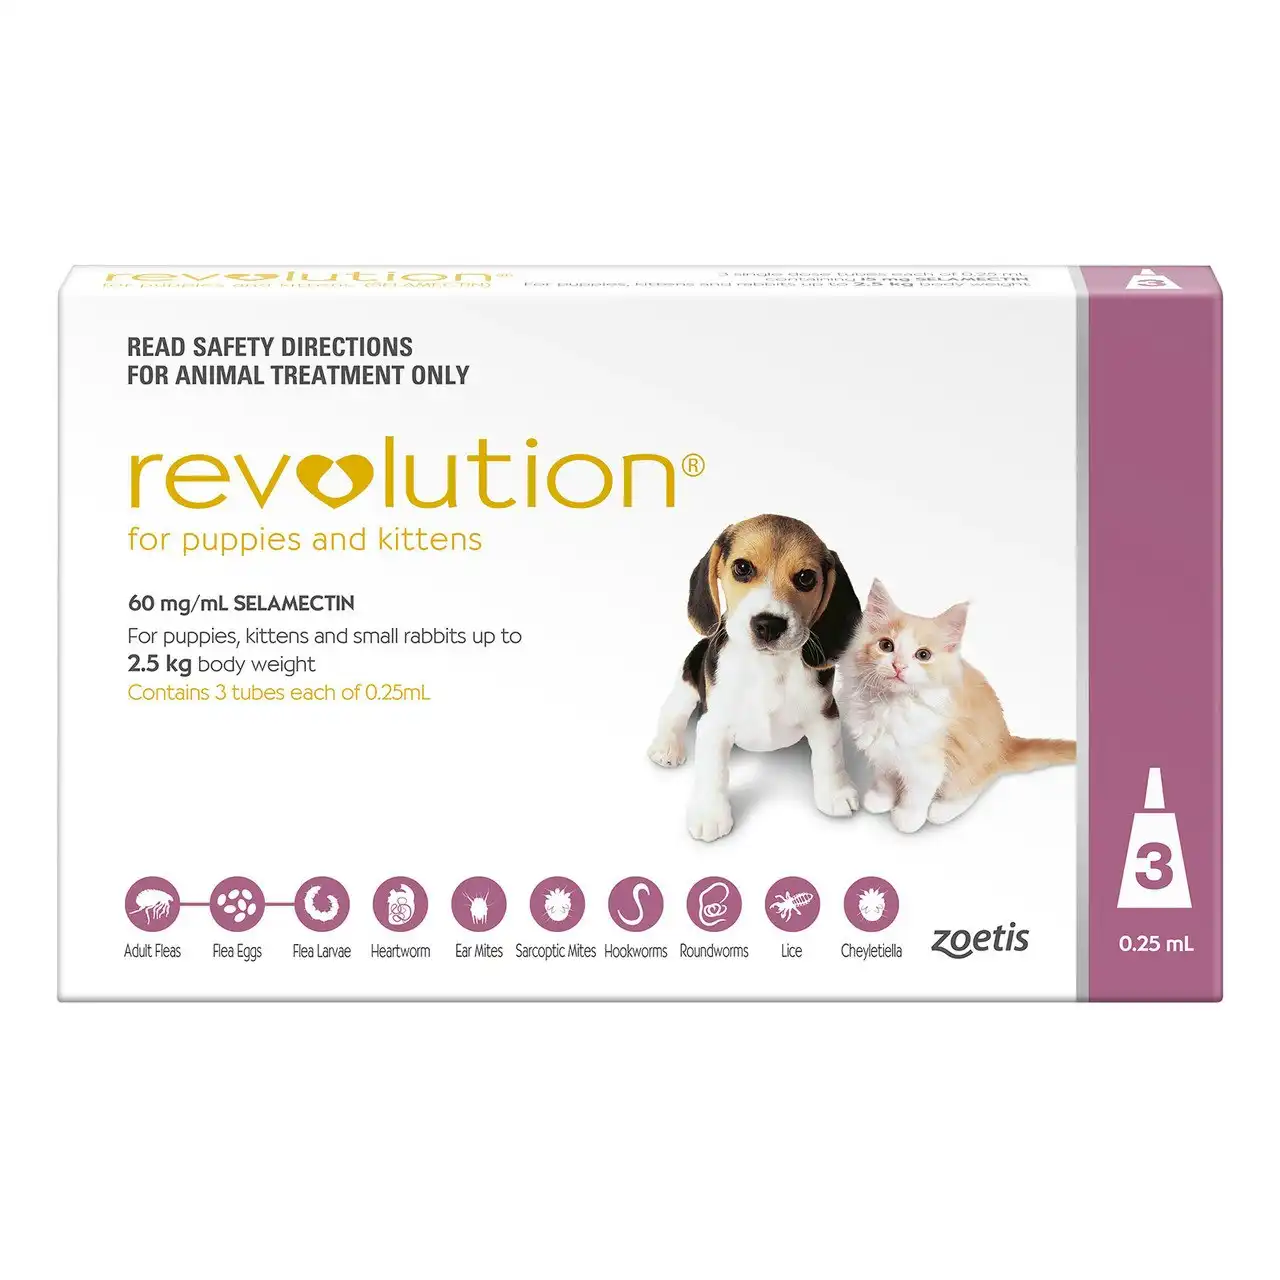 Revolution Puppy & Kitten Up To 2.5kg 3 Pack